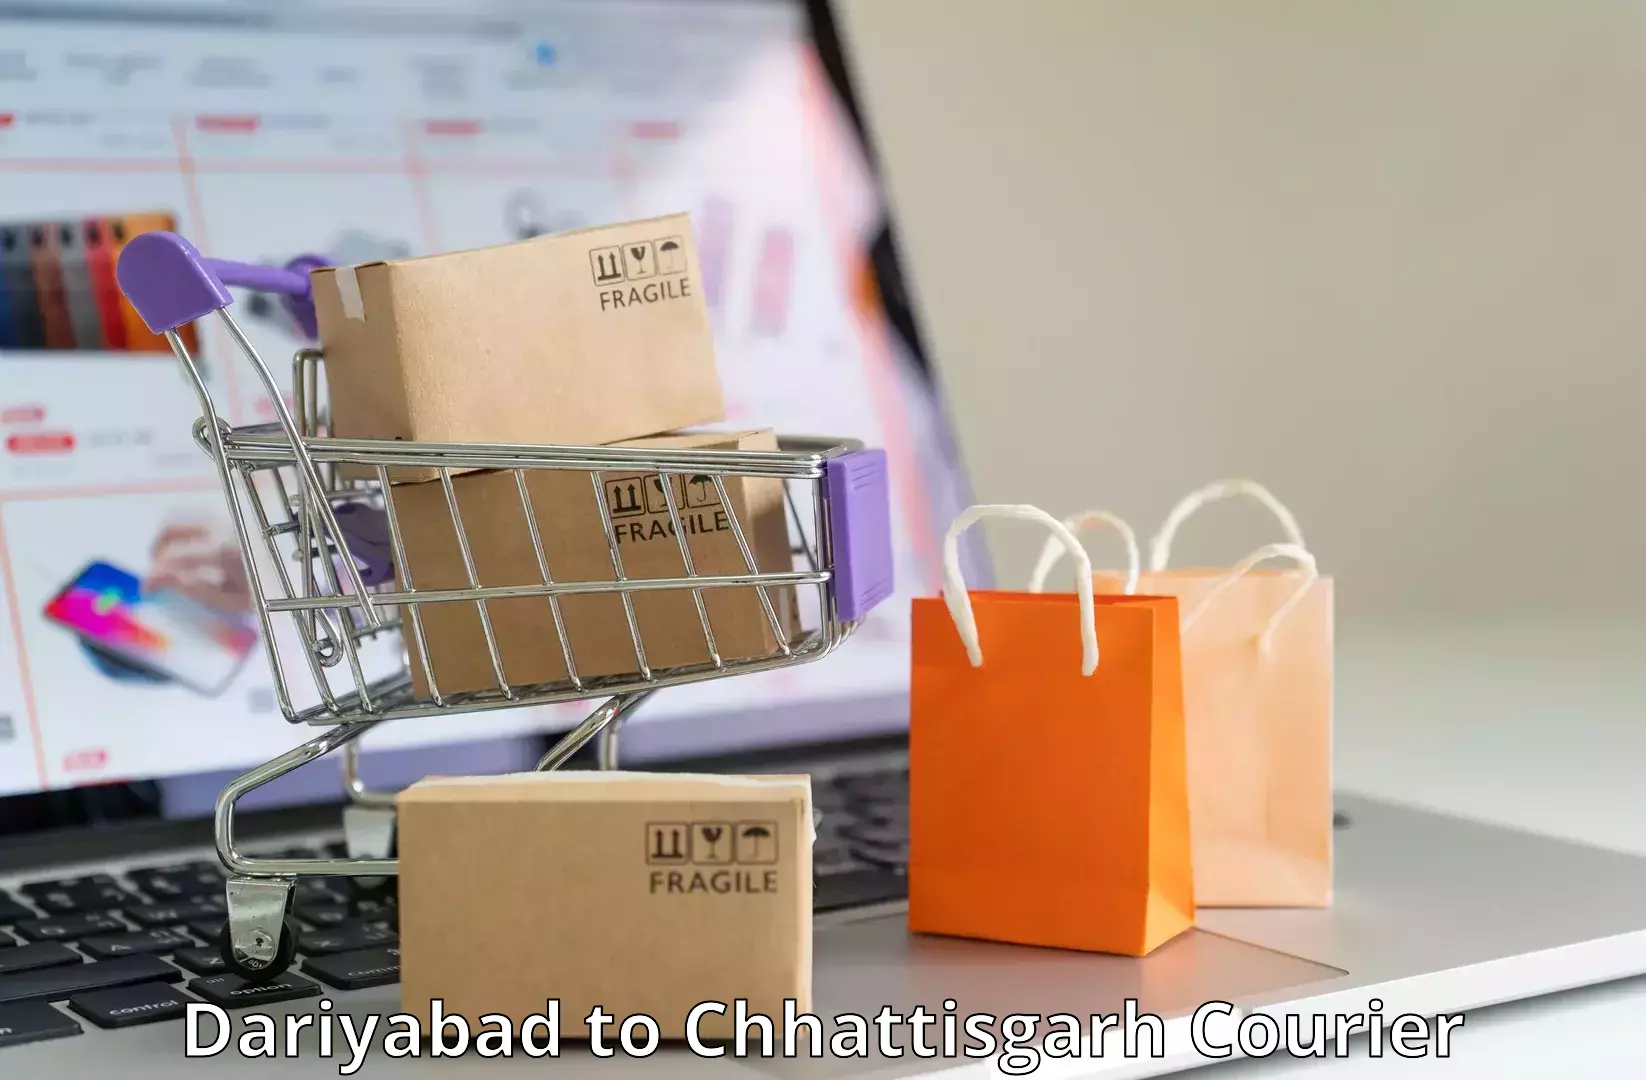 Efficient shipping operations Dariyabad to Chhattisgarh